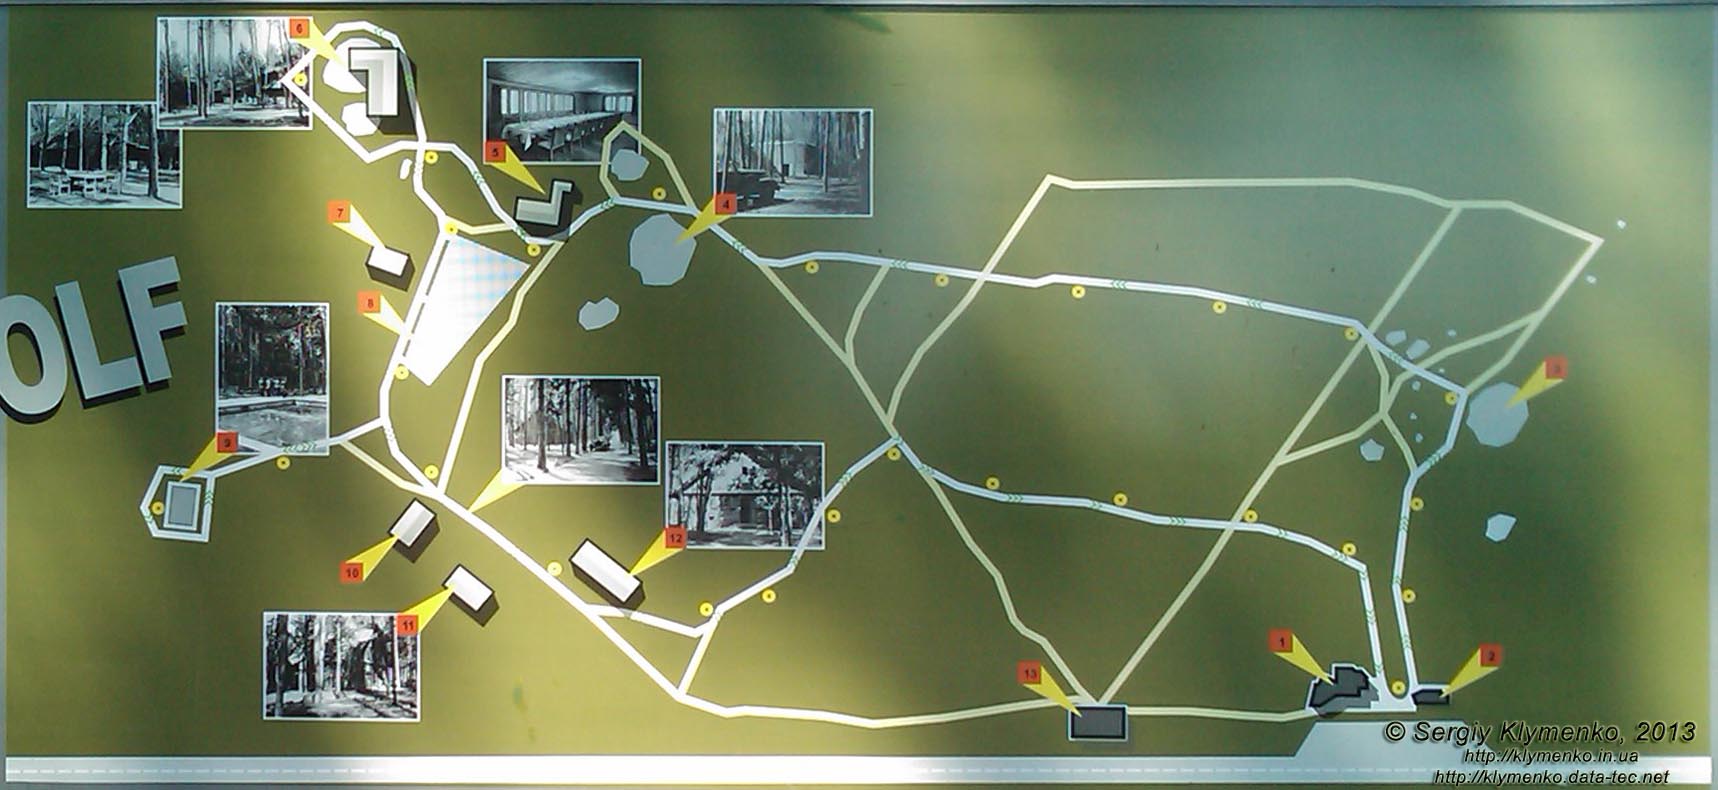 Винницкая область. Посёлок Стрижавка. Фото. Схема экскурсионного маршрута «VEHRWOLF».